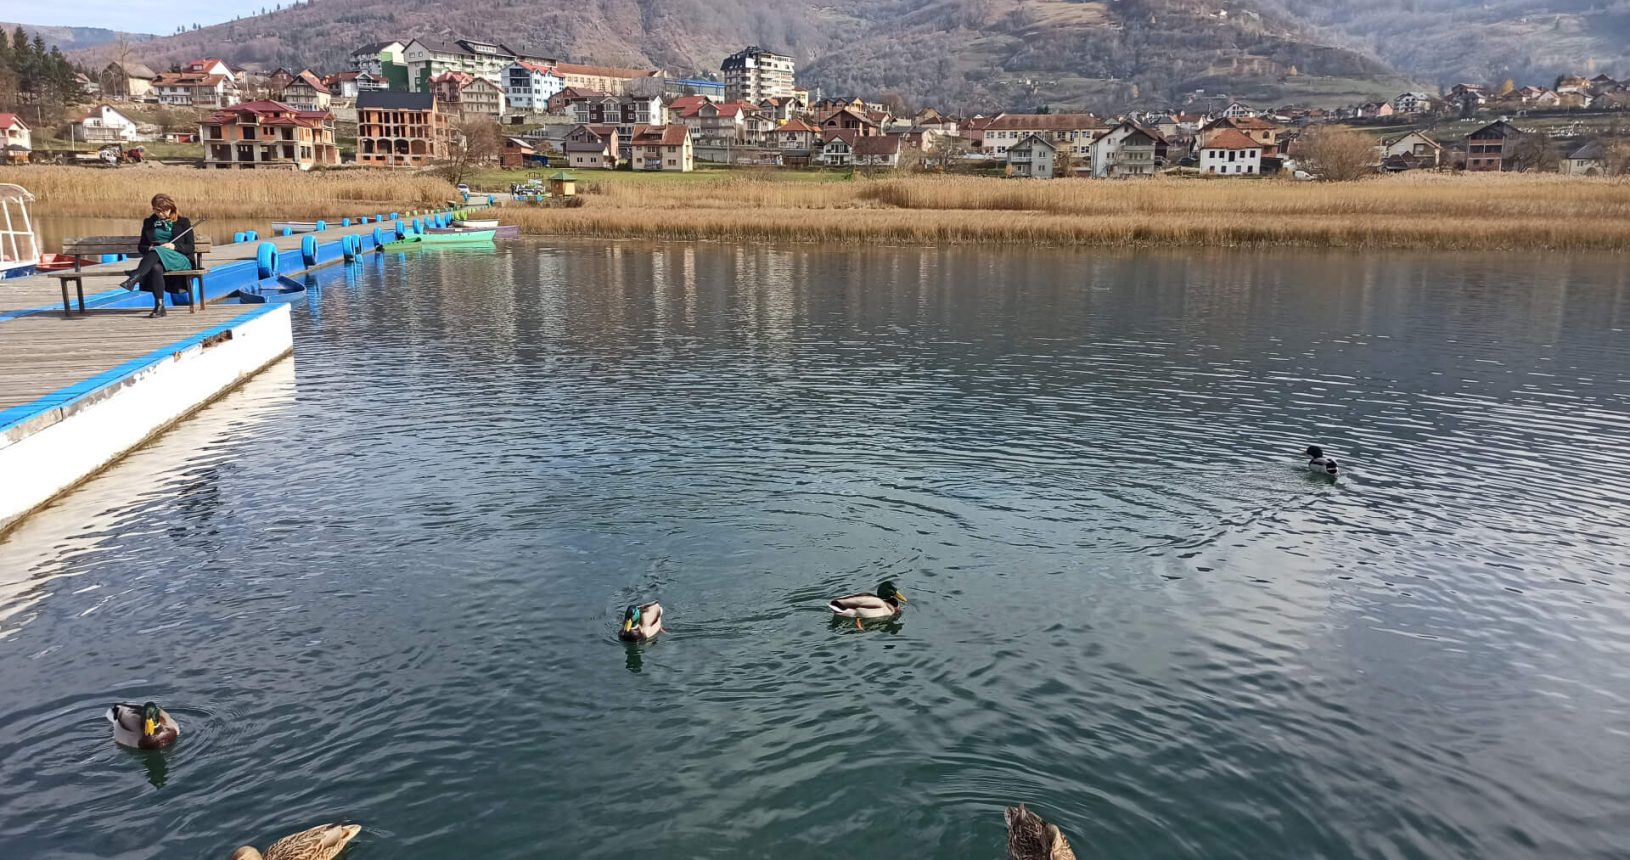 Hungry ducks at Plav lake